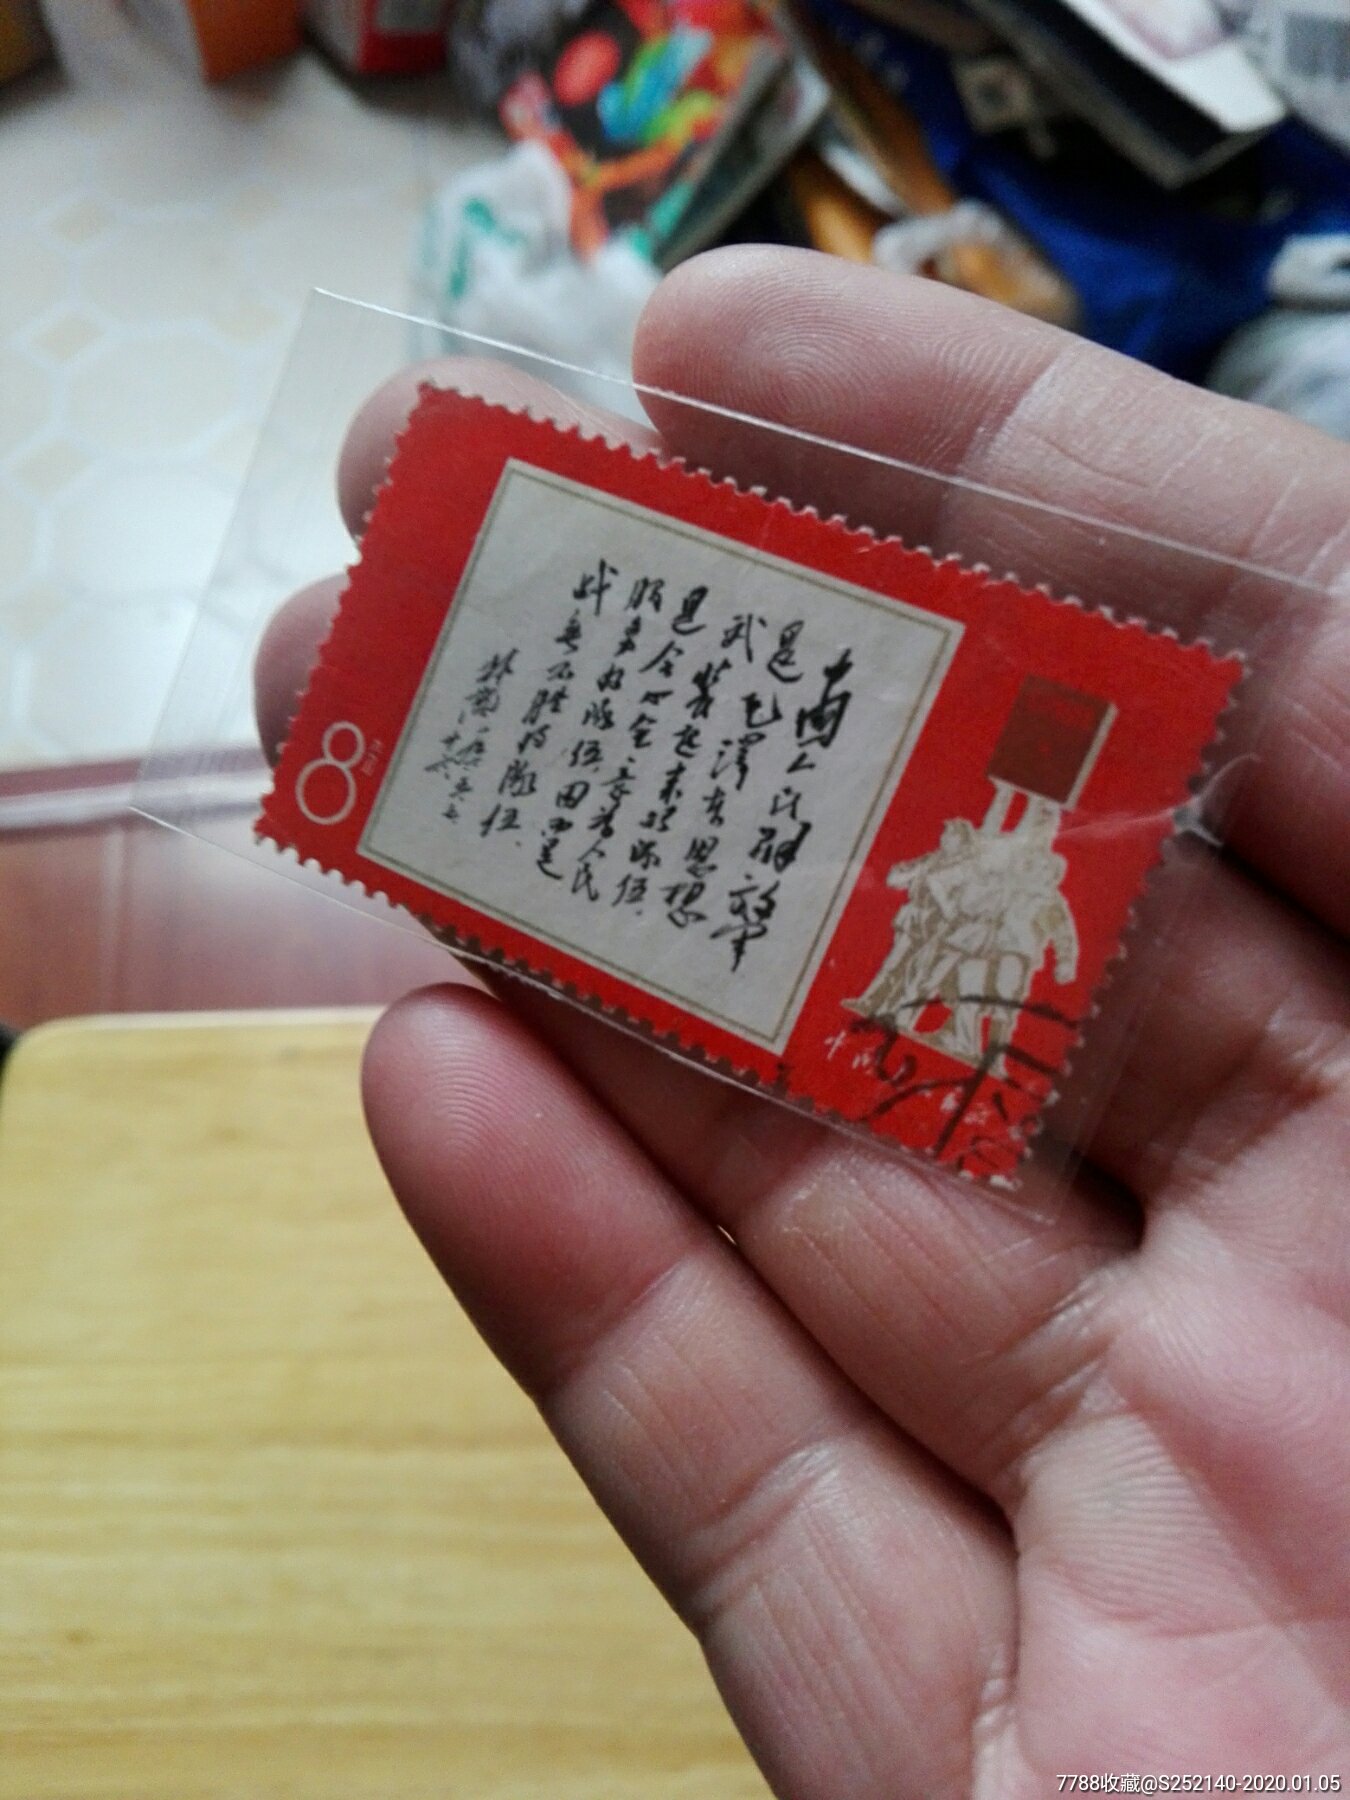 黑题词-价格:39.0000元-se70570215-新中国邮票-零售